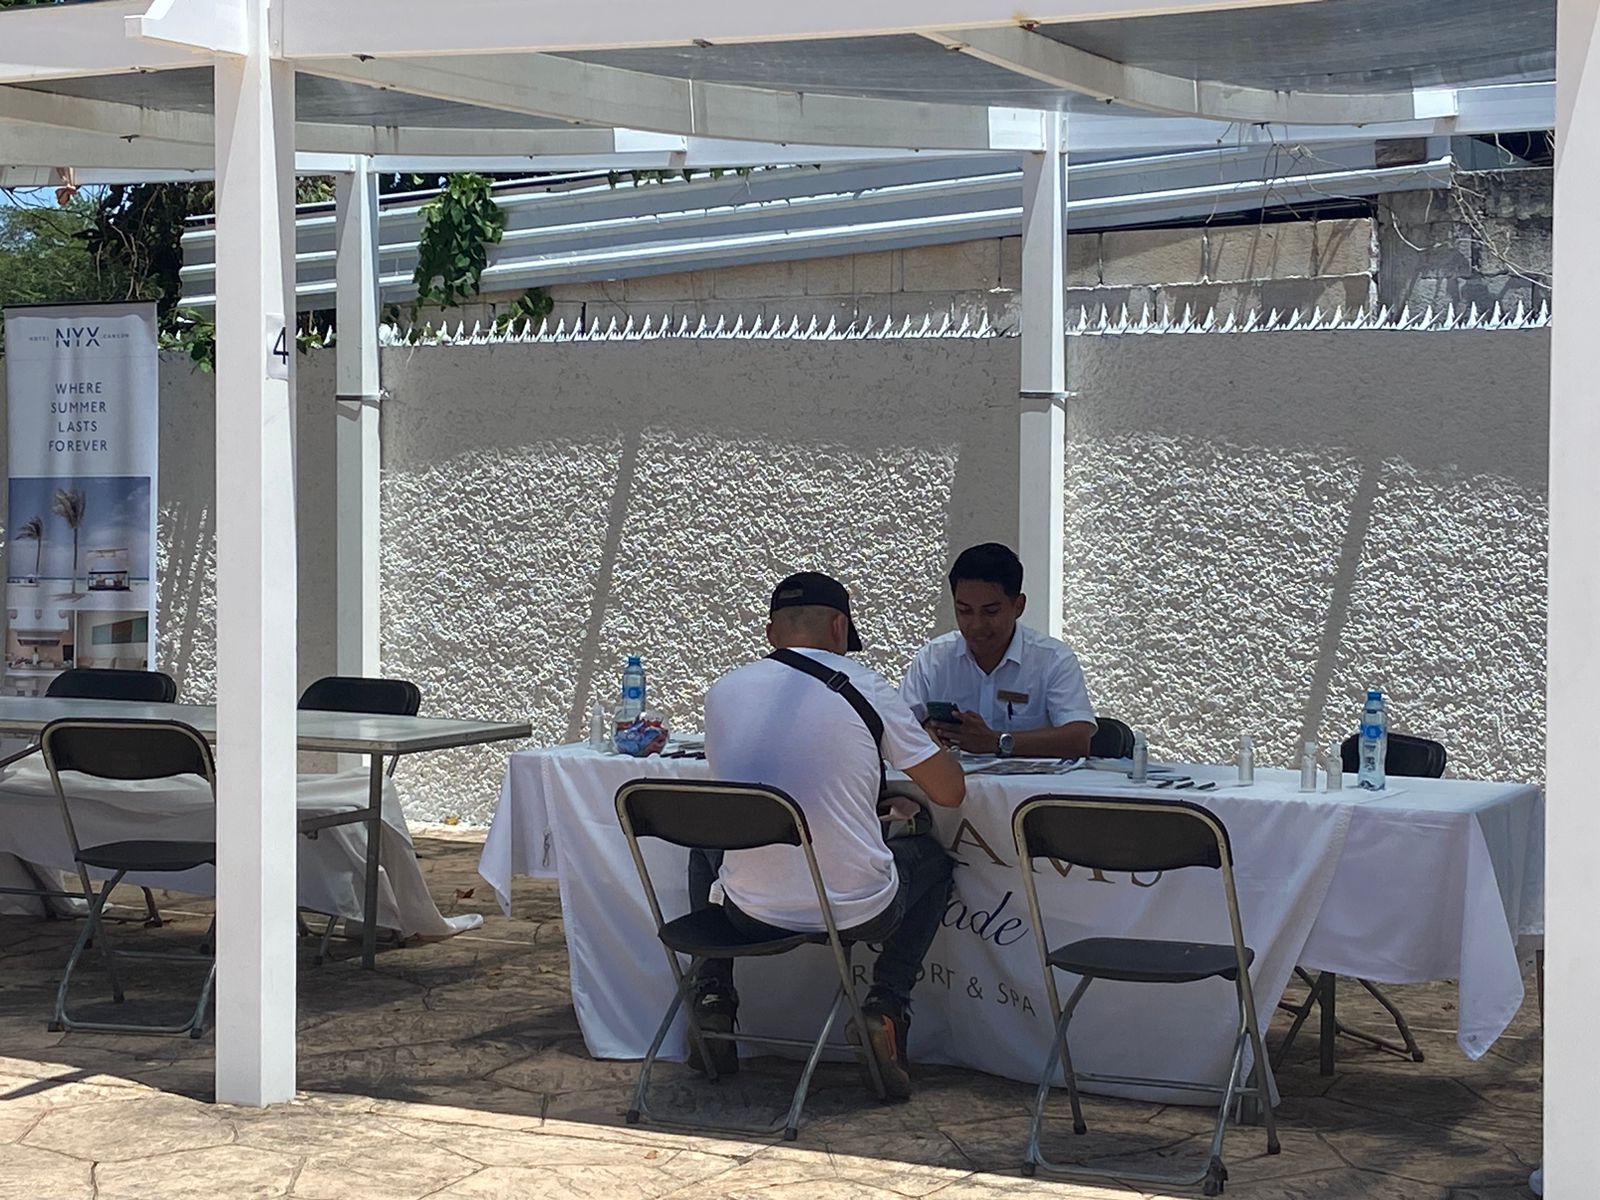 Hoteleros ofertan más de 600 vacantes en Cancún